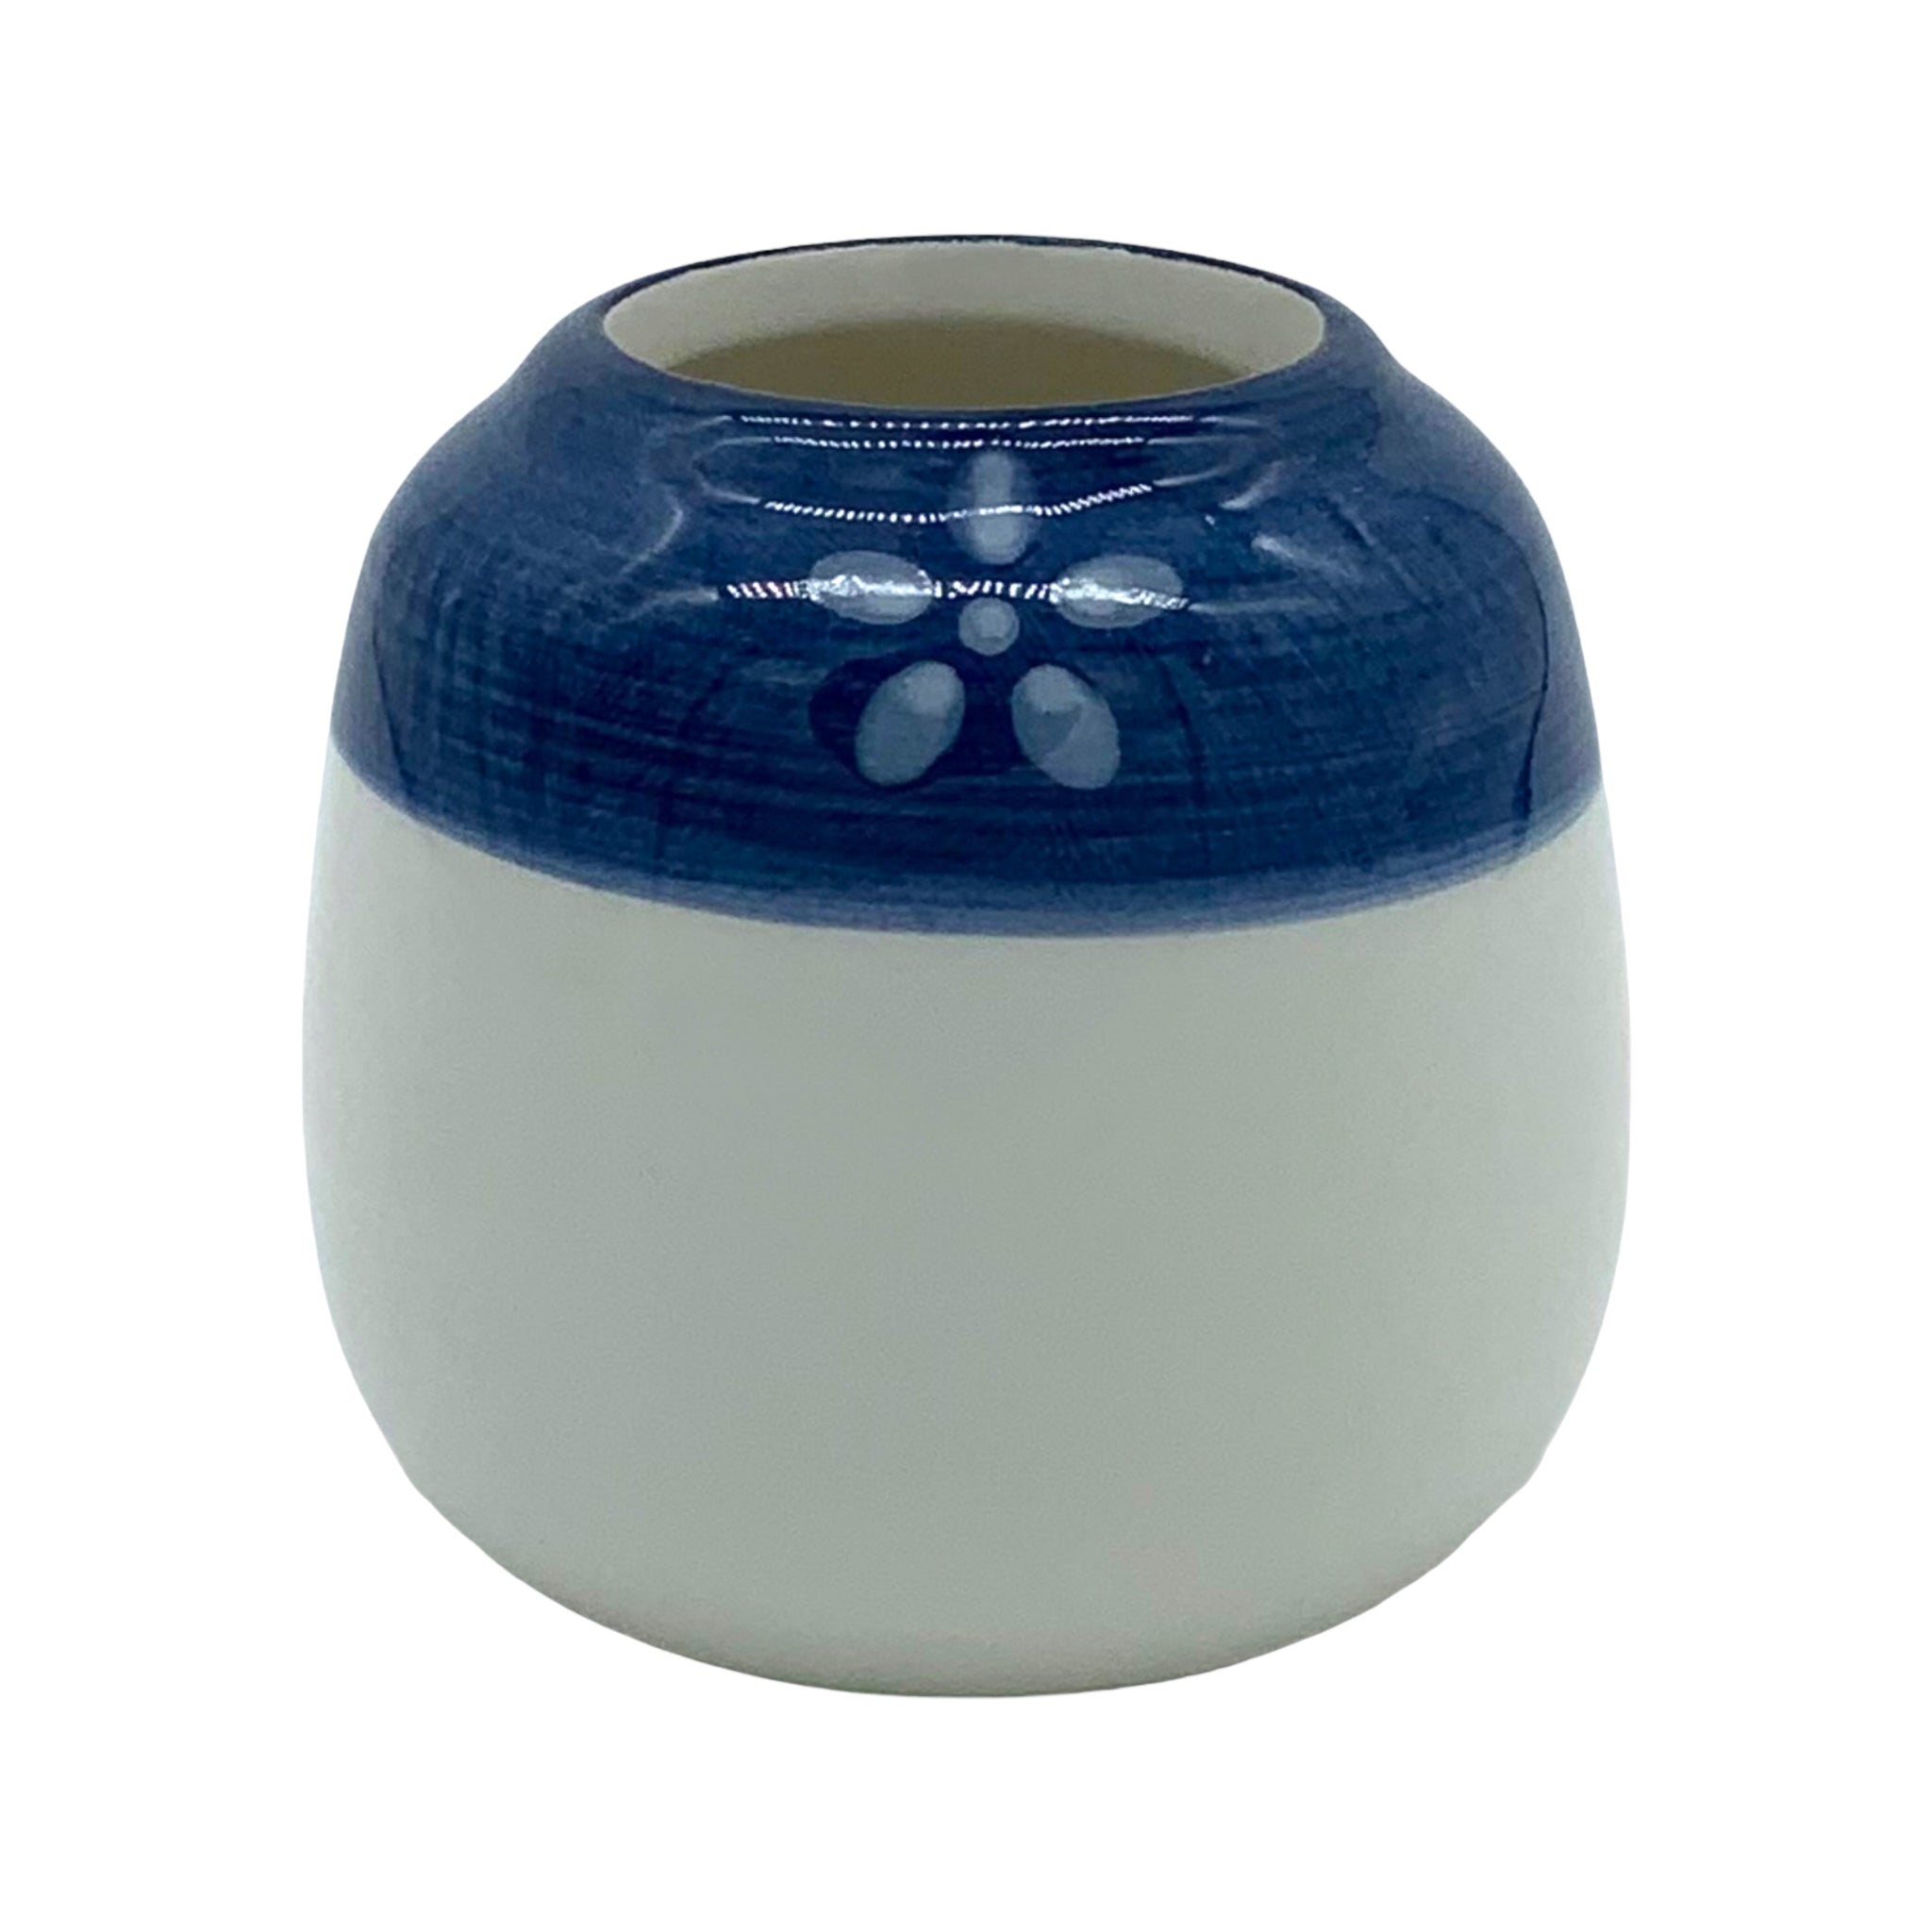 Mini-Blumentopf OSAKA, japanischer Stil, blau, 5er-Set, Ø 6 cm, mit Drainageloch